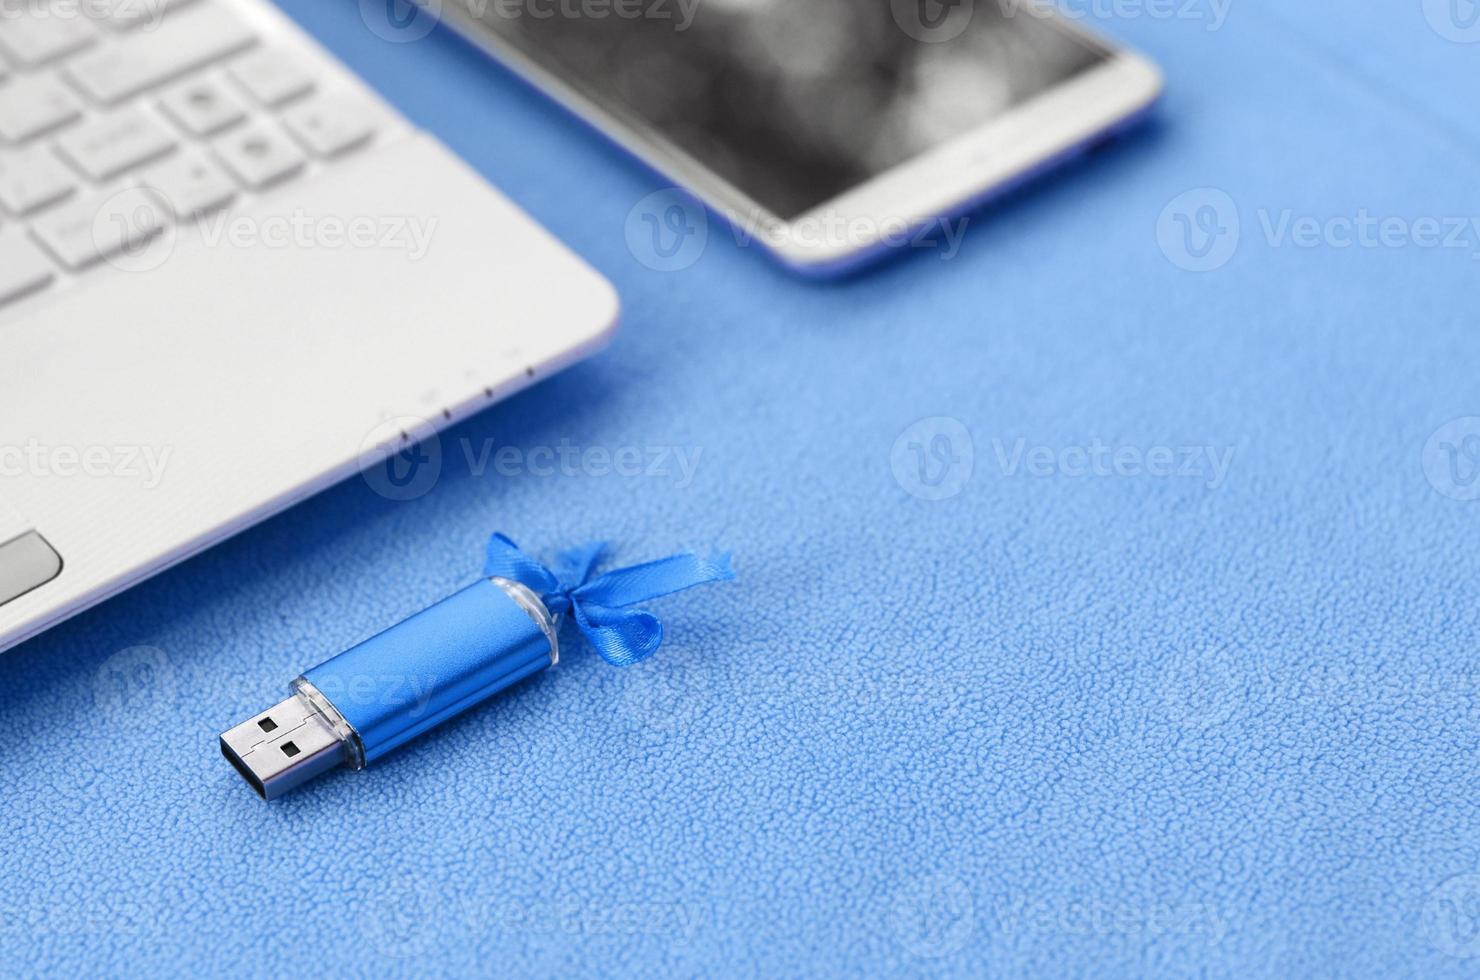 carte mémoire flash usb bleu brillant avec un arc bleu se trouve sur une couverture de tissu polaire bleu clair doux et poilu à côté d'un ordinateur portable blanc et d'un smartphone. conception de cadeau féminin classique pour une carte mémoire photo